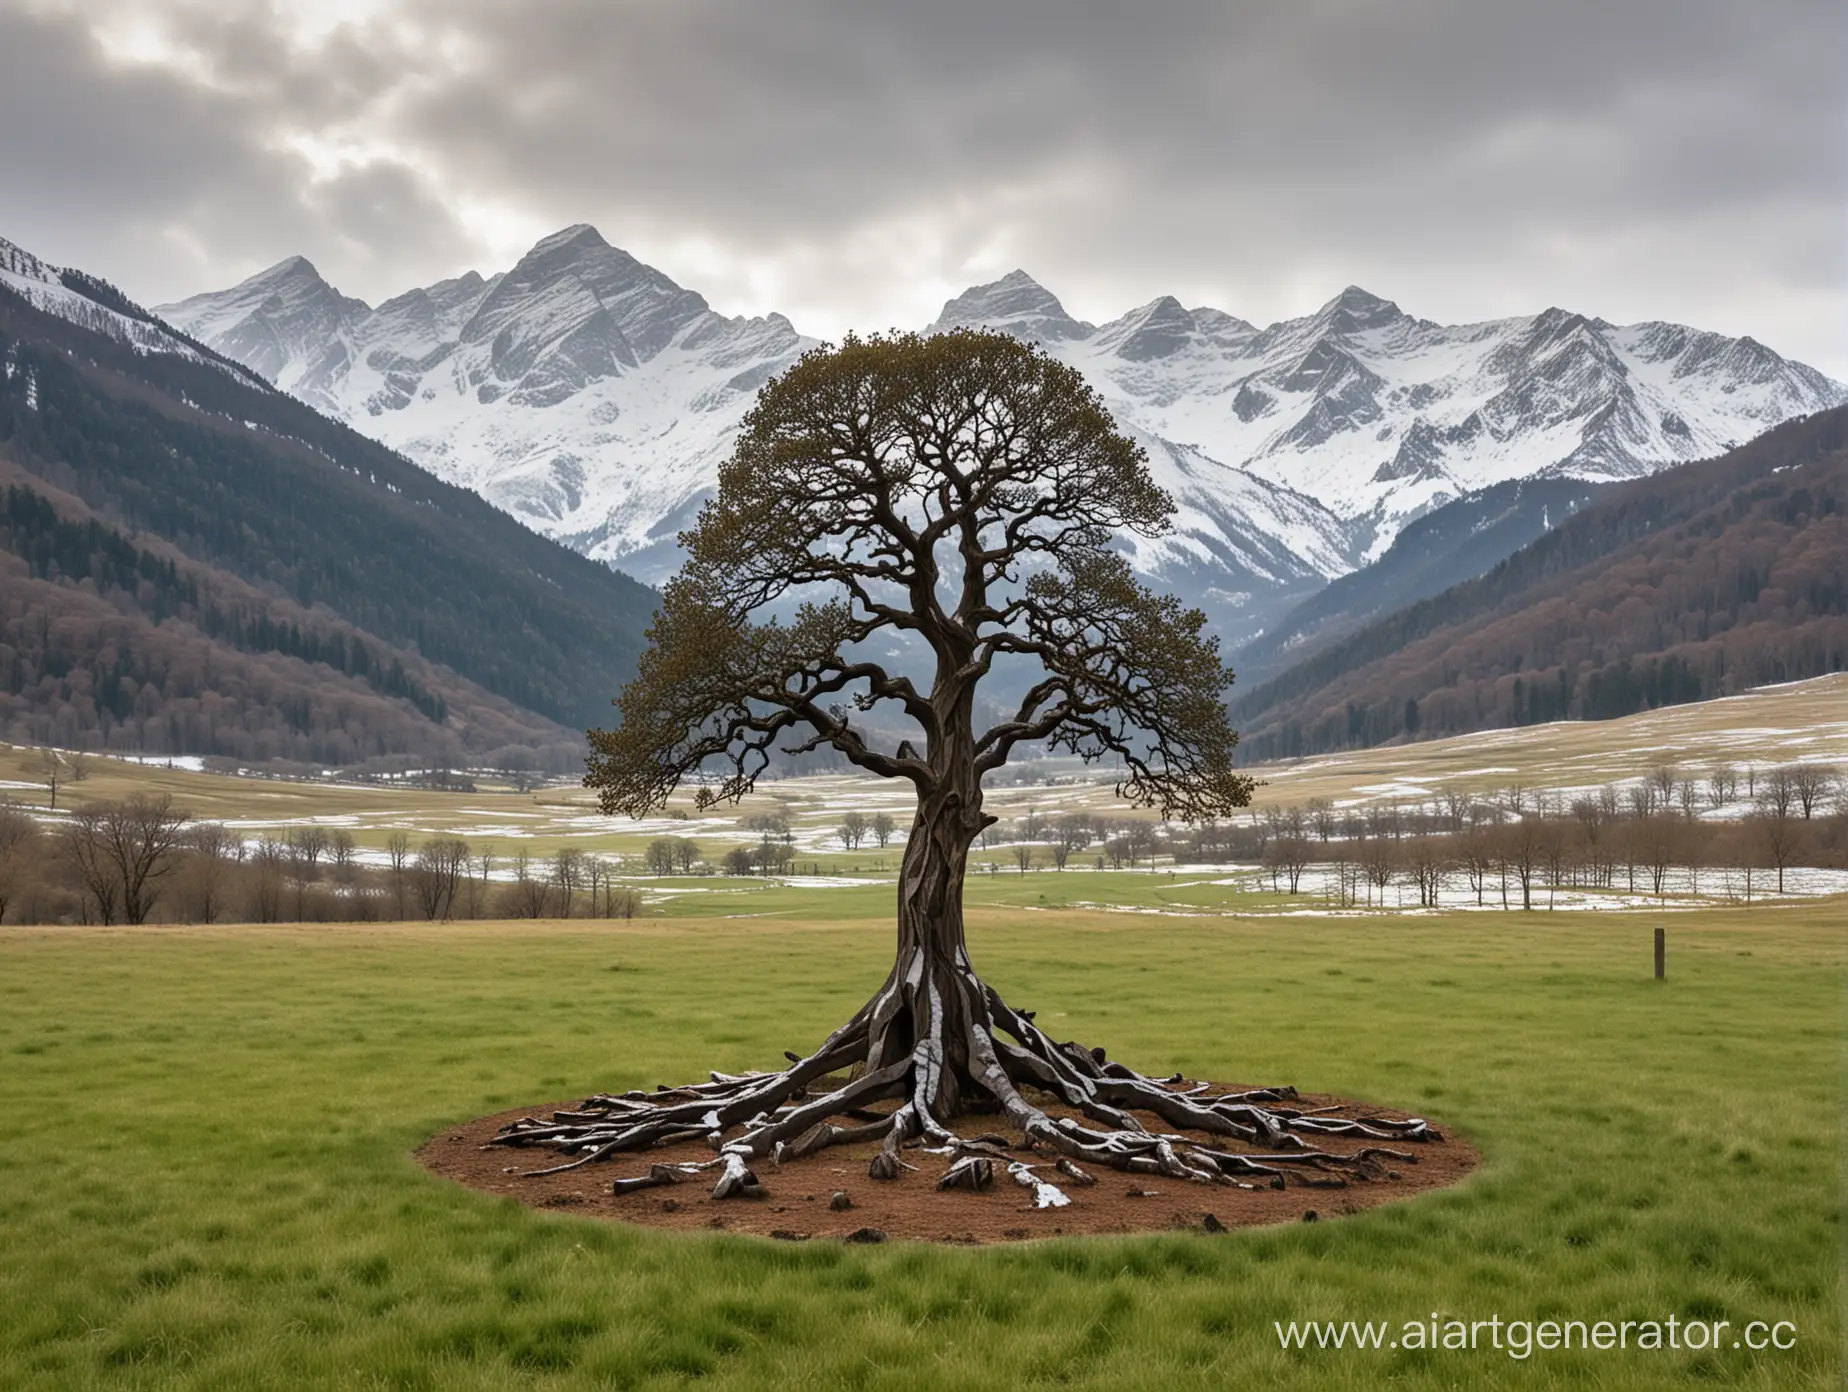 Metal-Oak-Tree-Sculpture-with-Snowy-Mountain-Peaks